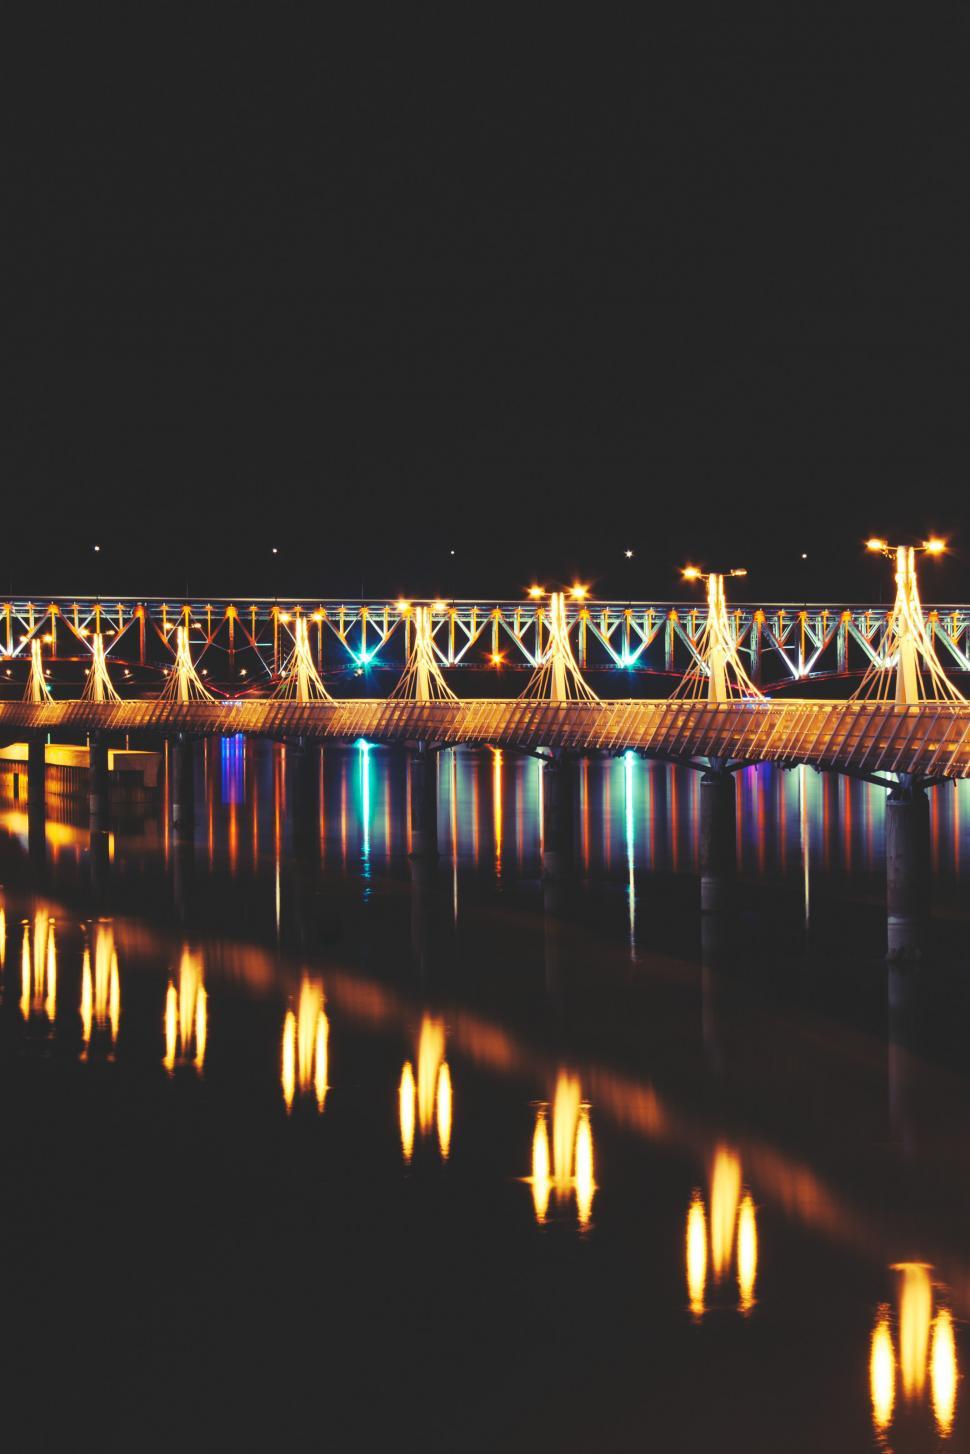 Free Image of Illuminated Bridge Spanning Waterway 